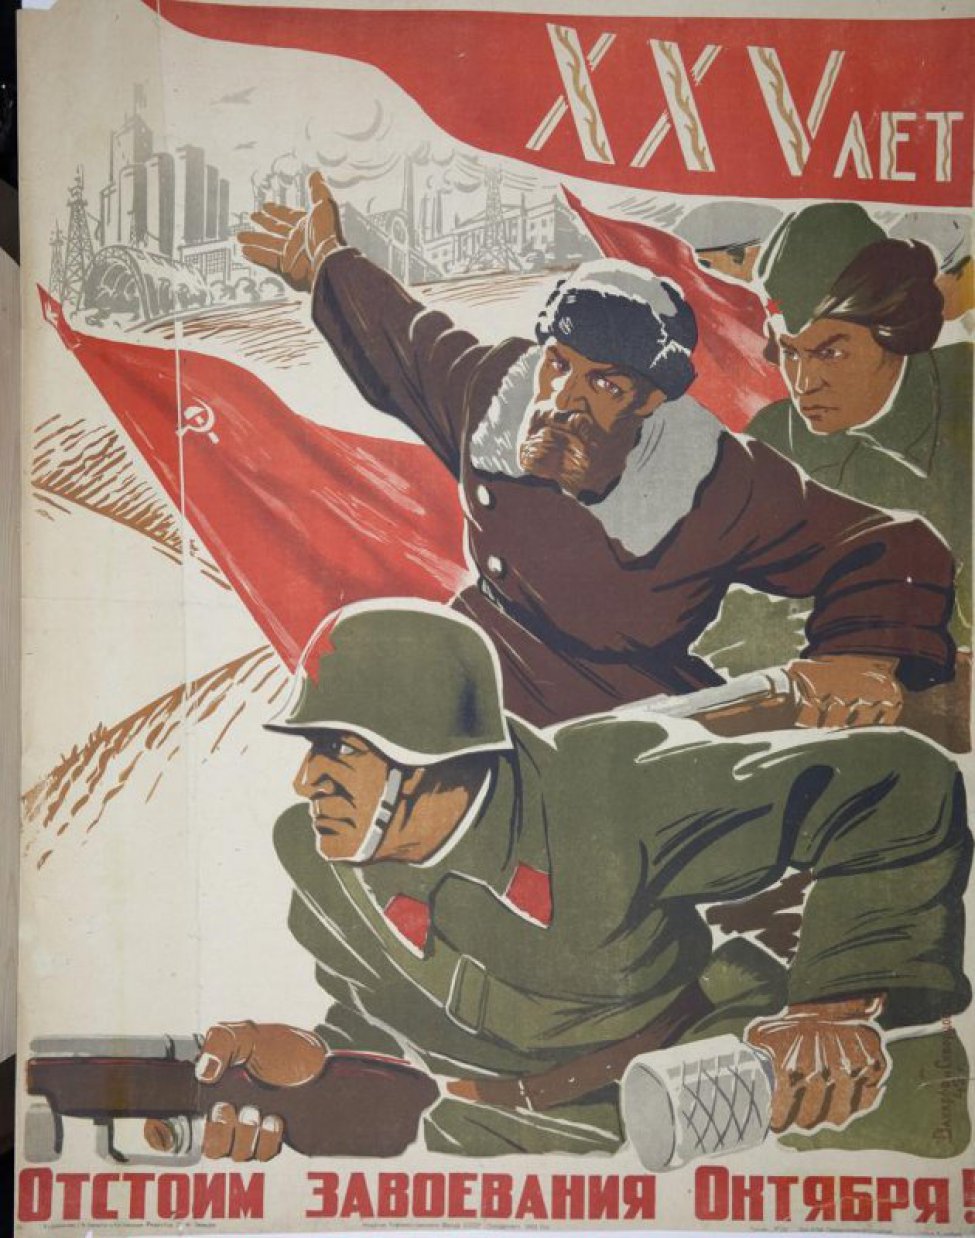 Изображен красноармеец партизан и сандружинница. На верху дата " ХХУ лет", ниже красные знамена.